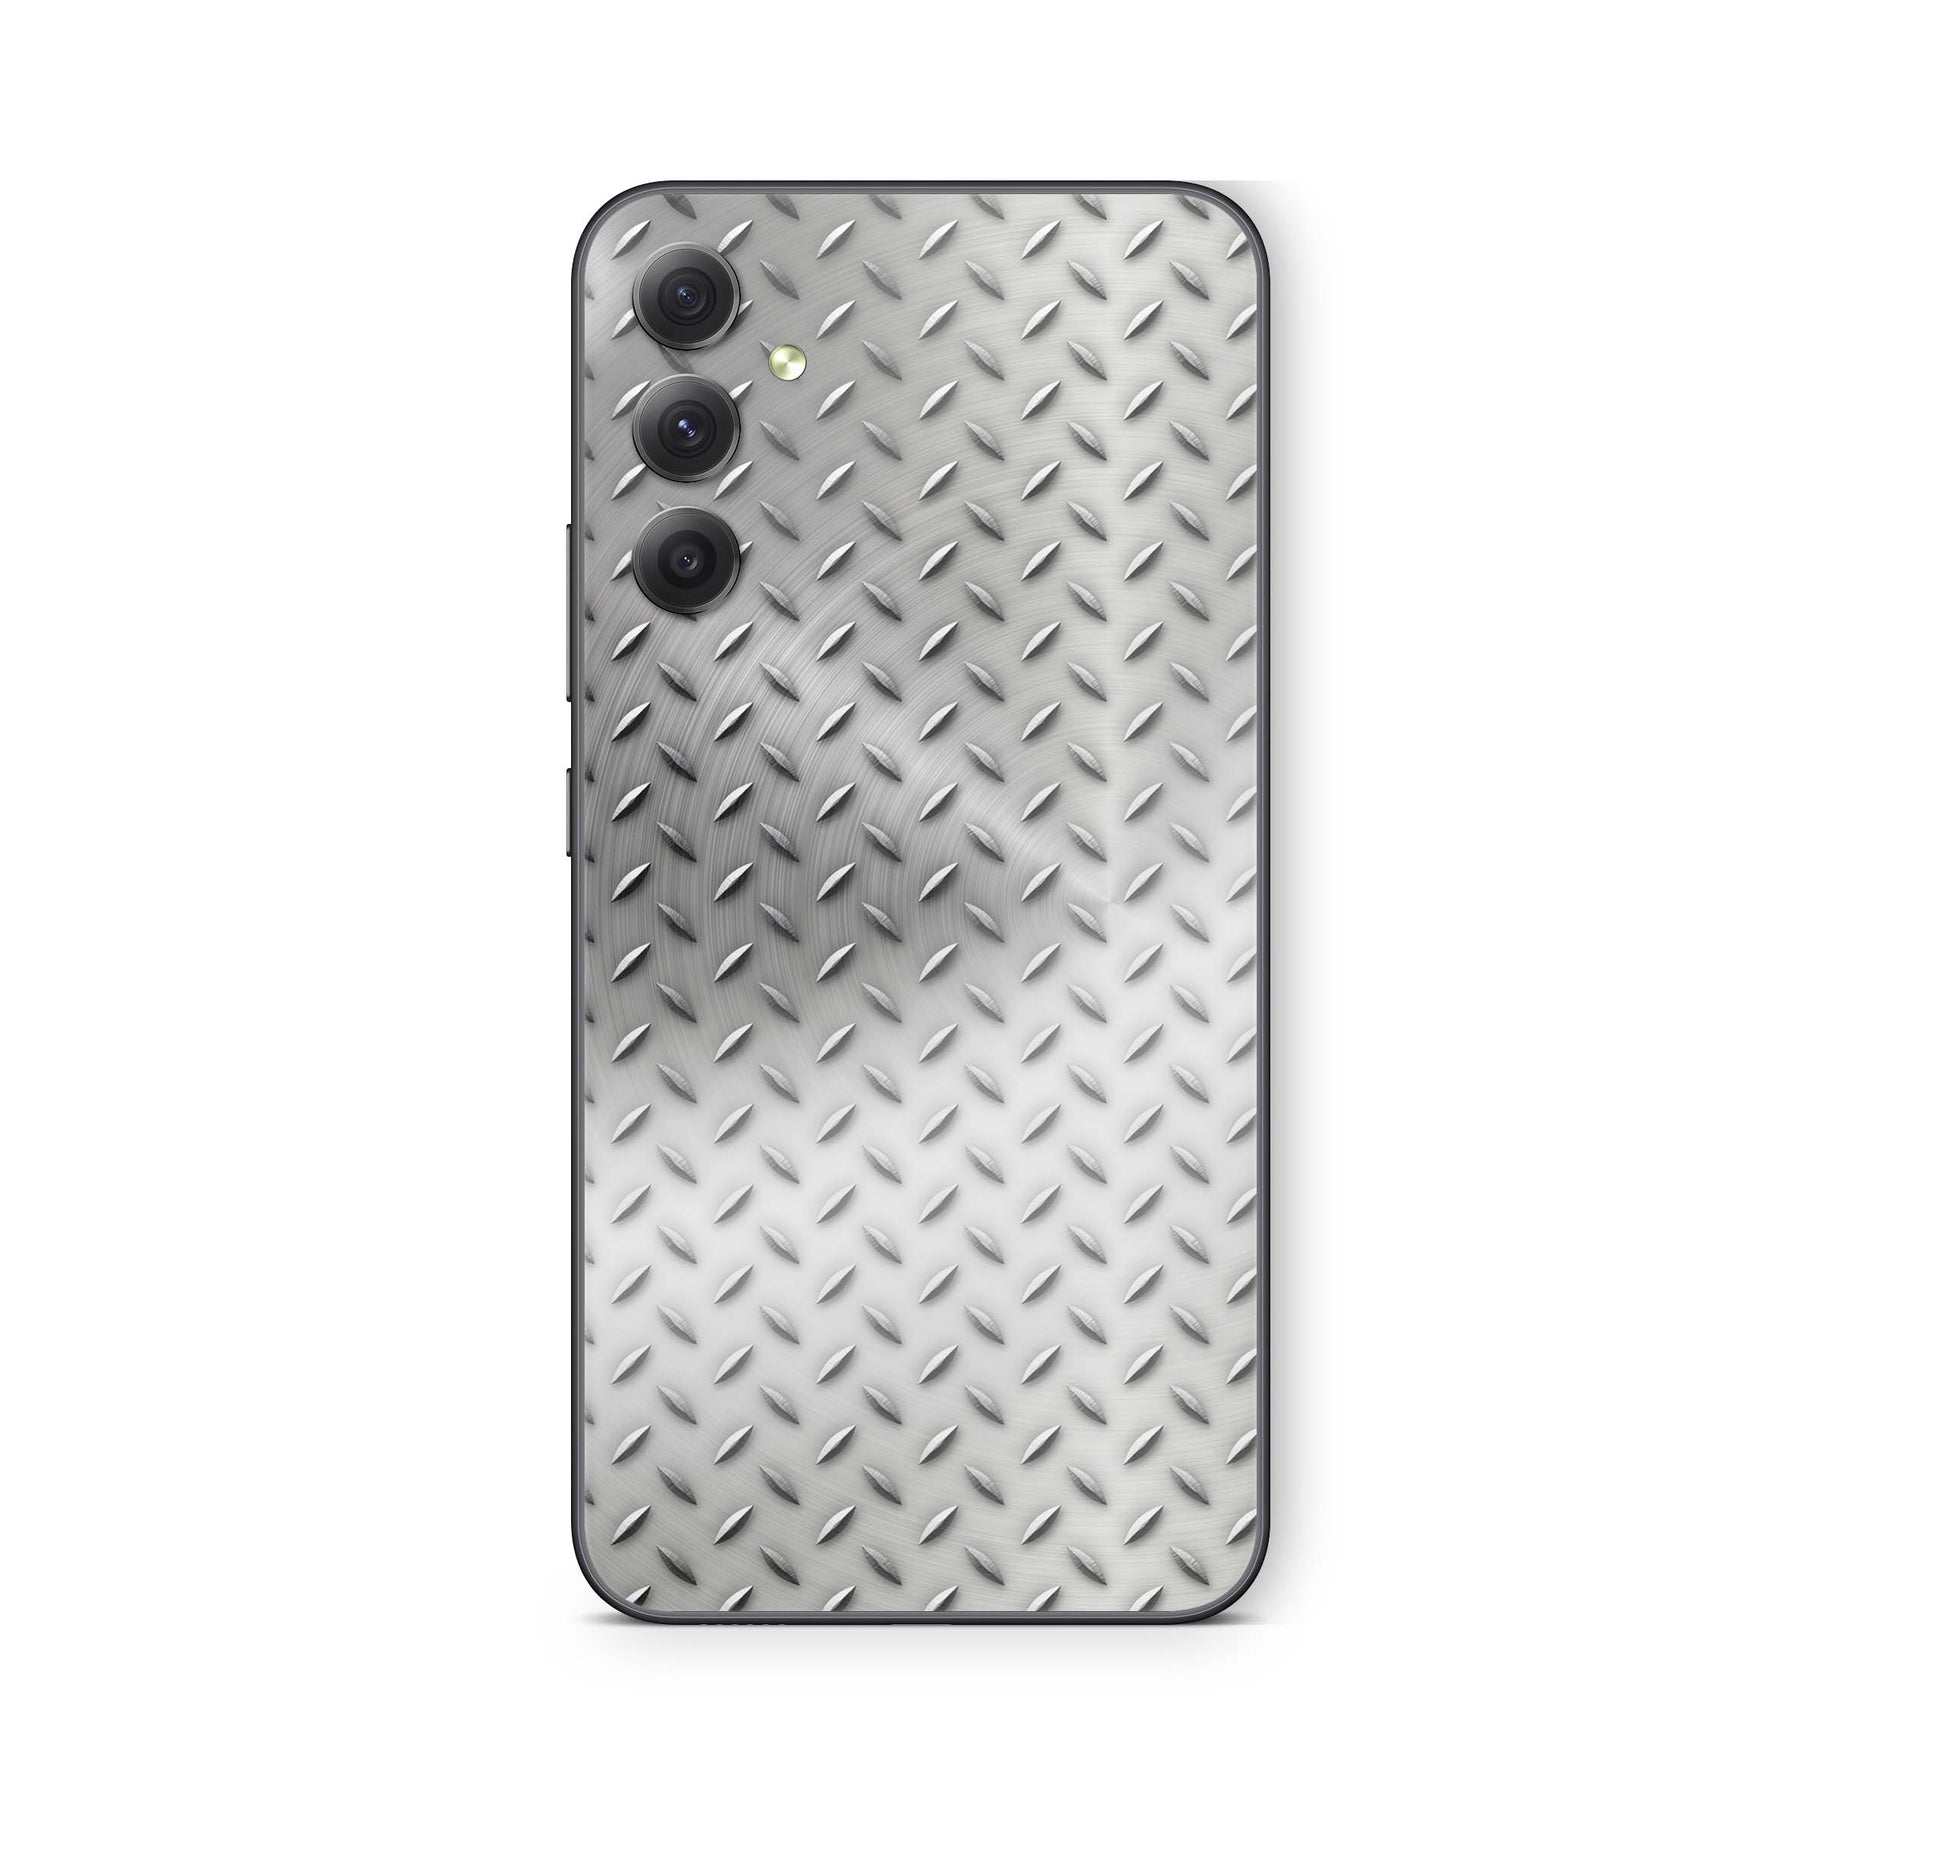 Samsung Galaxy S24 Skin Schutzfolie Aufkleber Skins Design Stahl Elektronik-Sticker & -Aufkleber skins4u   